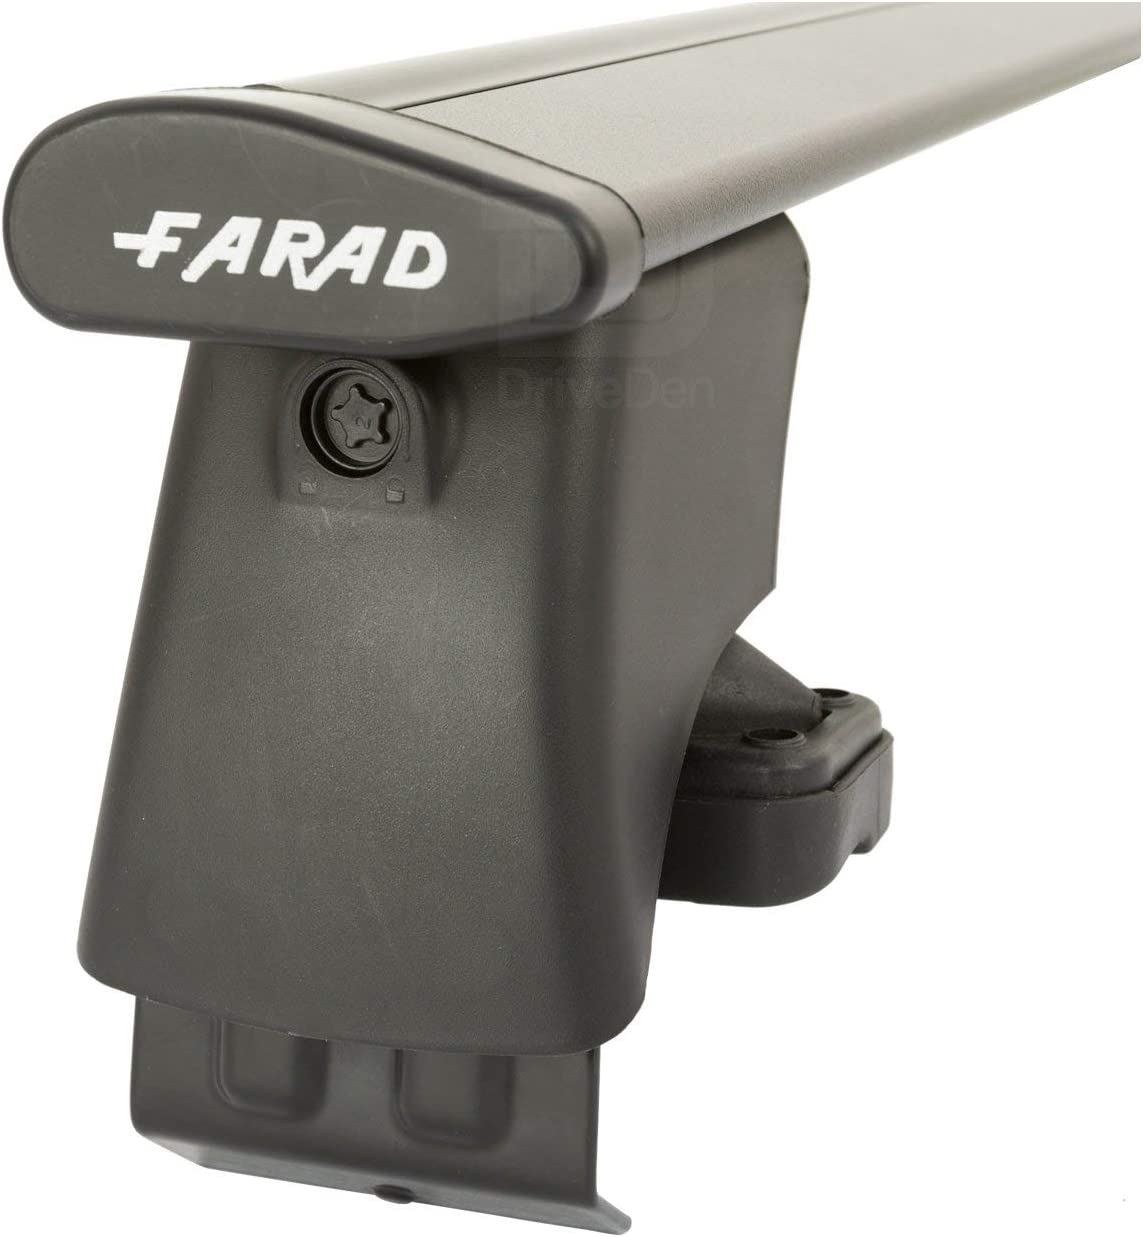 FARAD-Kit H2 per barre portatutto - Opel Agila 2008-2014 (senza corrimano)